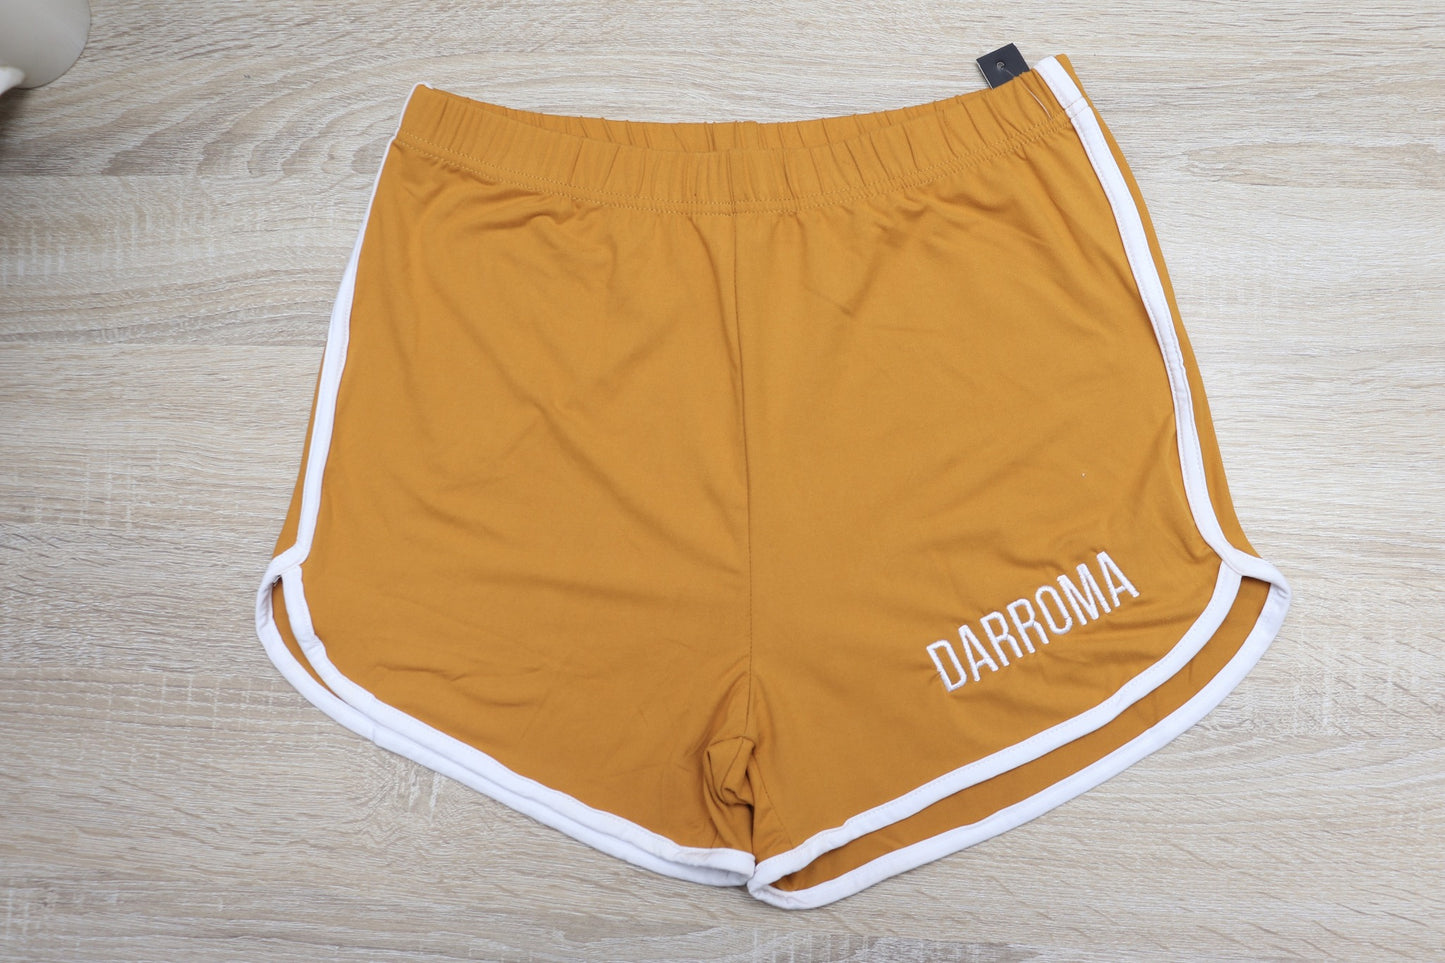 Darroma’s Booty Shorts